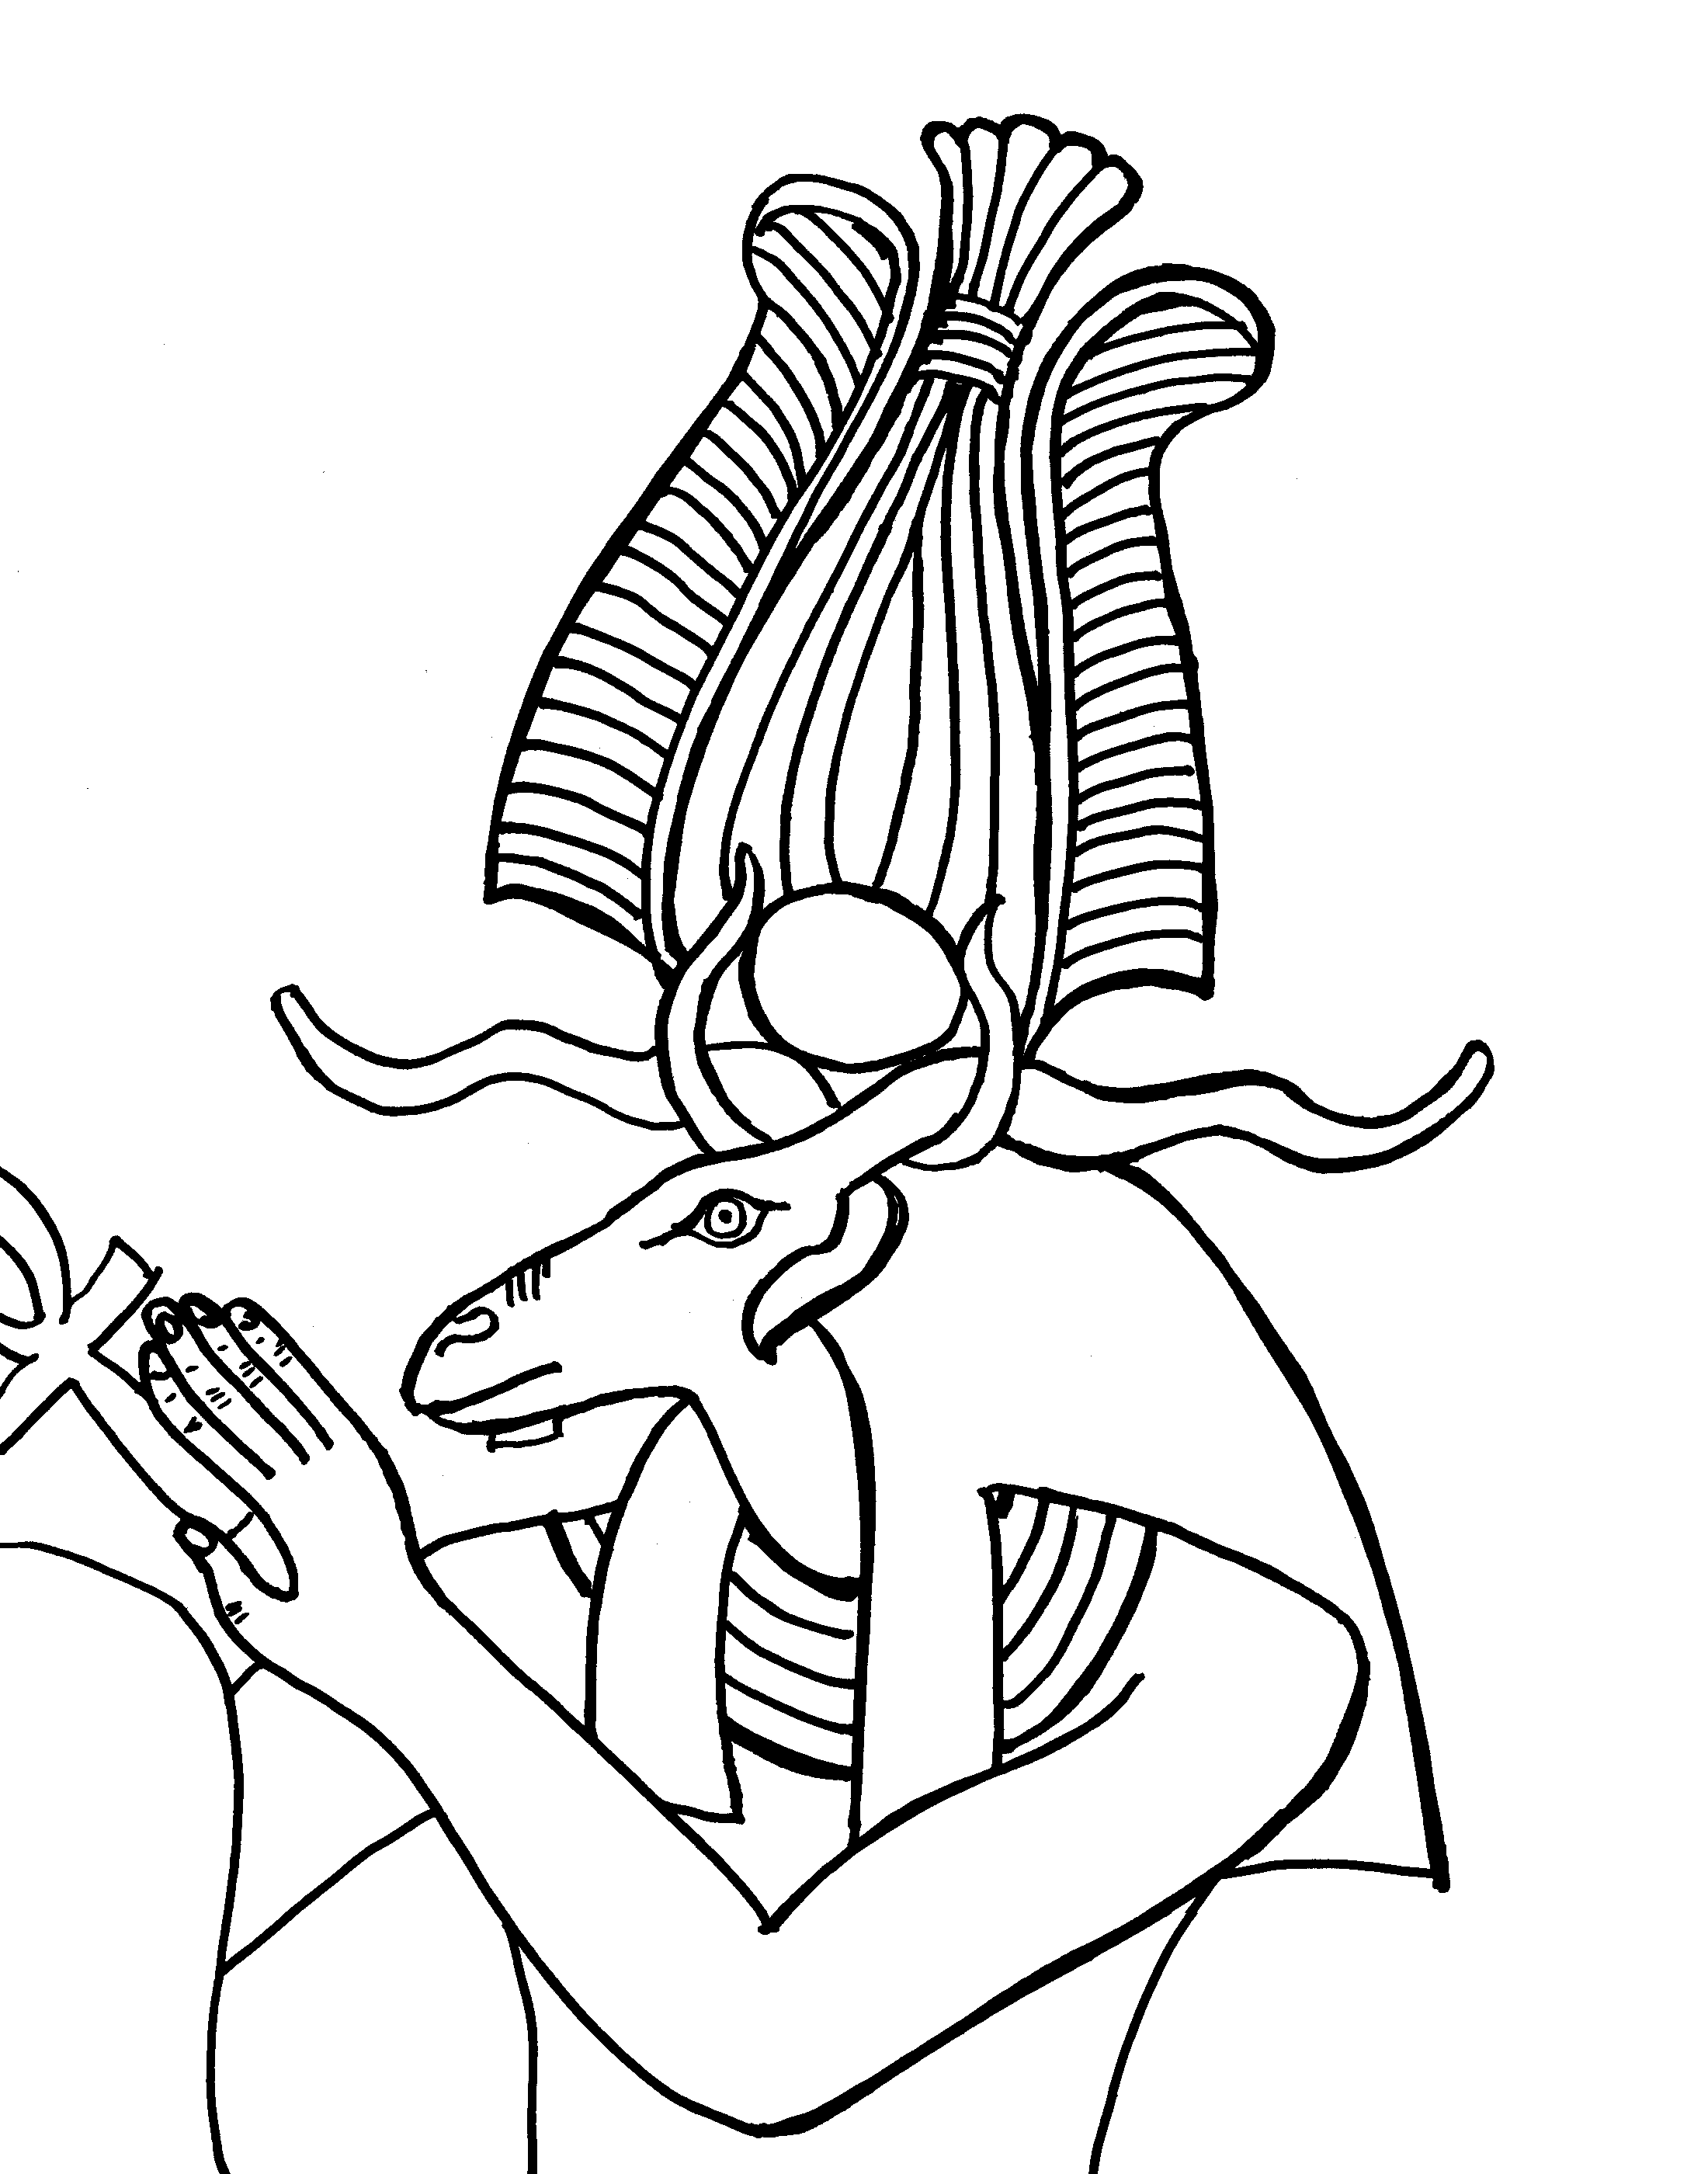 Malvorlage: Ägyptische Mythologie (Götter und Göttinnen) #111376 - Kostenlose Malvorlagen zum Ausdrucken